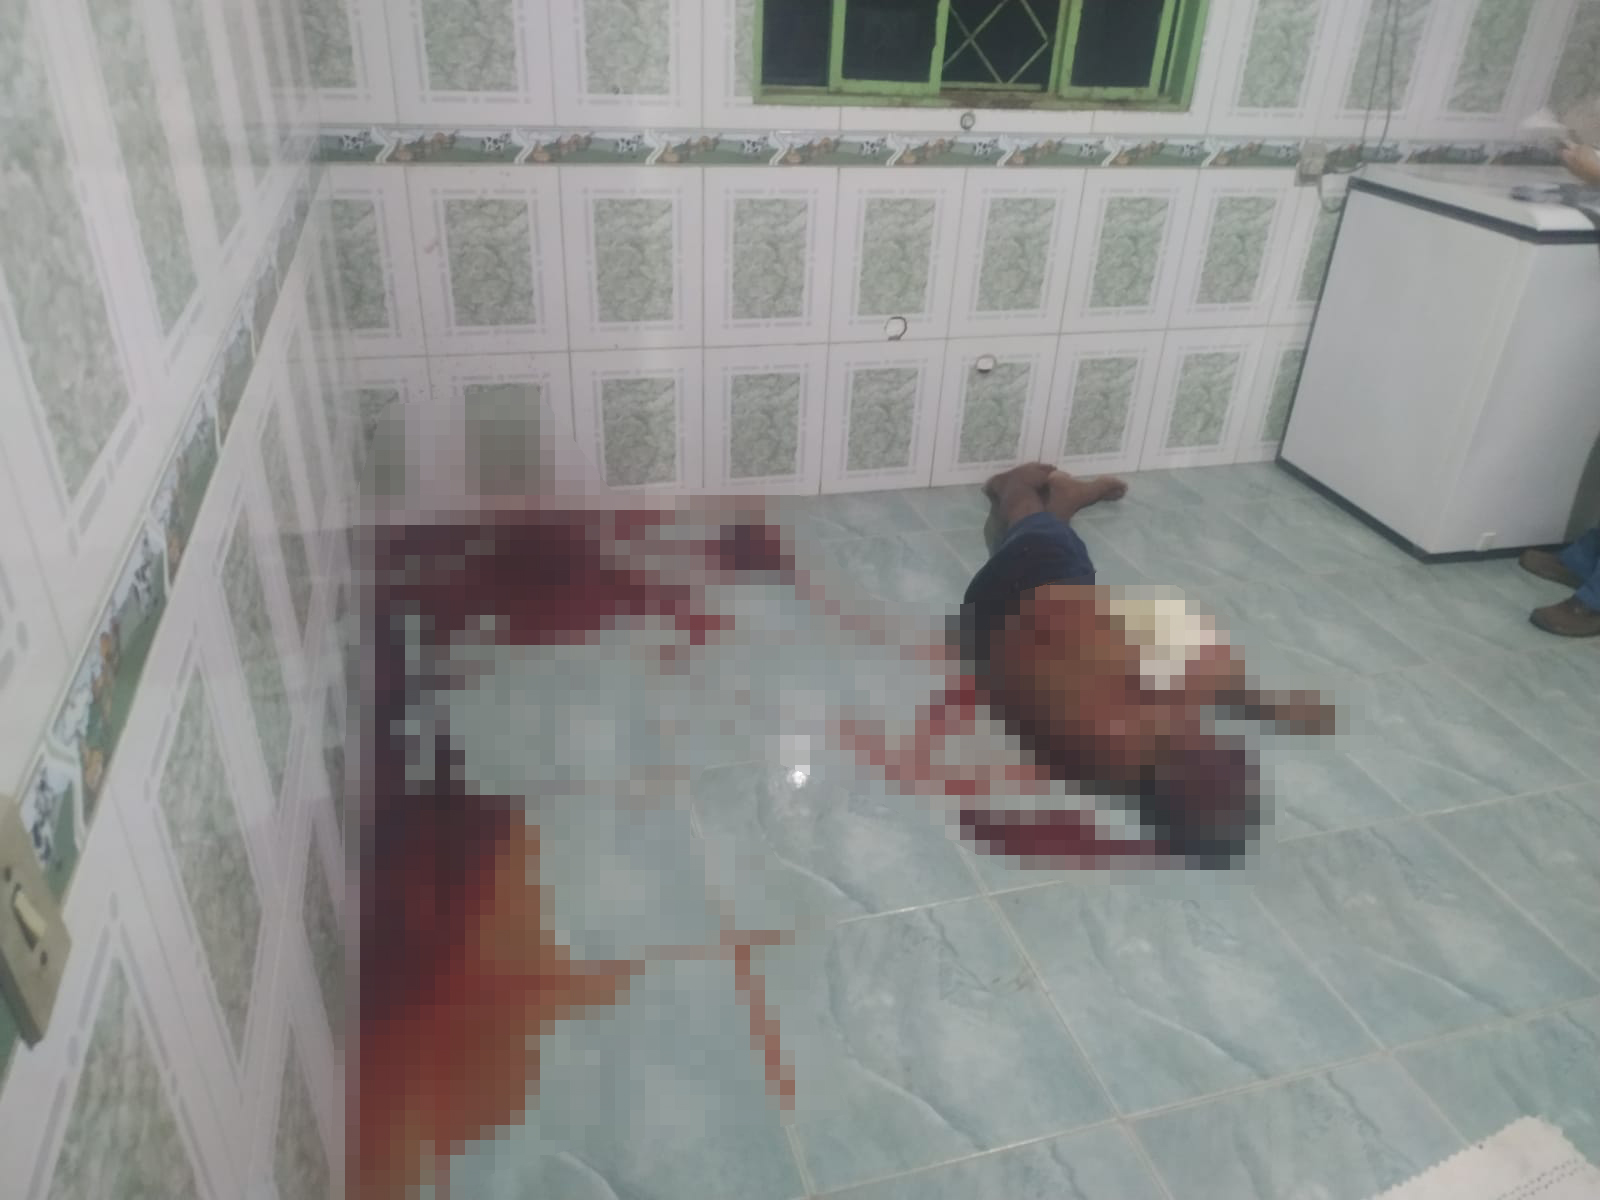 SINOP: Idoso é brutalmente executado com vários tiros dentro de residência 2